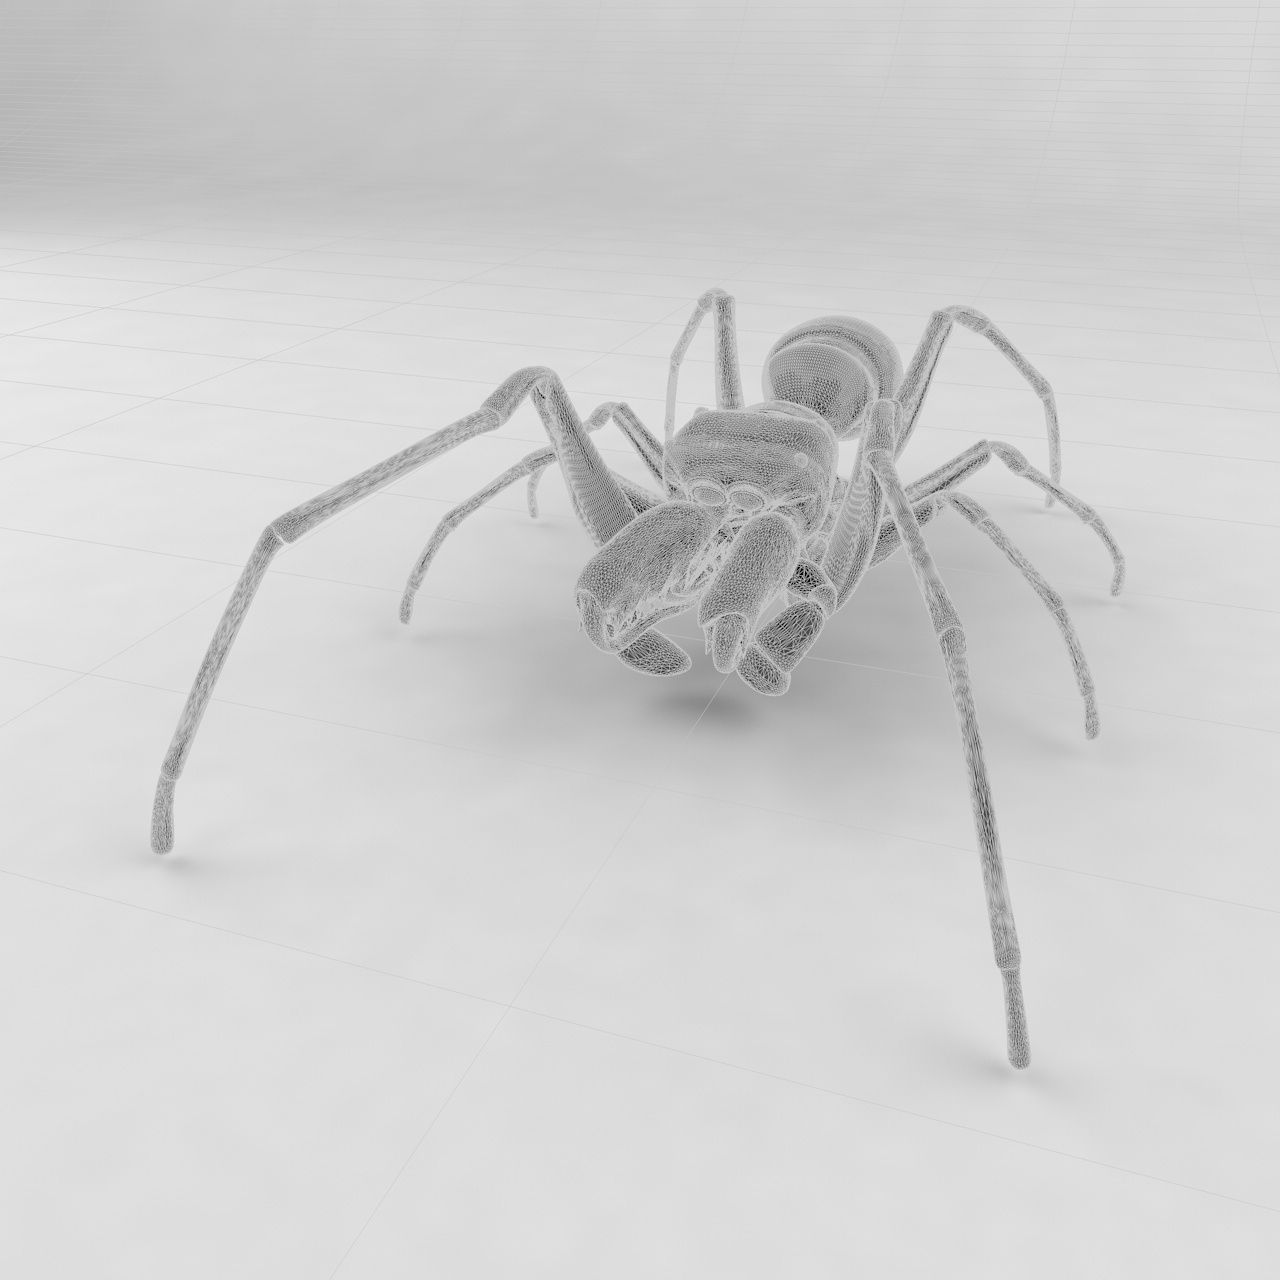 Antimimicking örümcek böcek 3d modeli